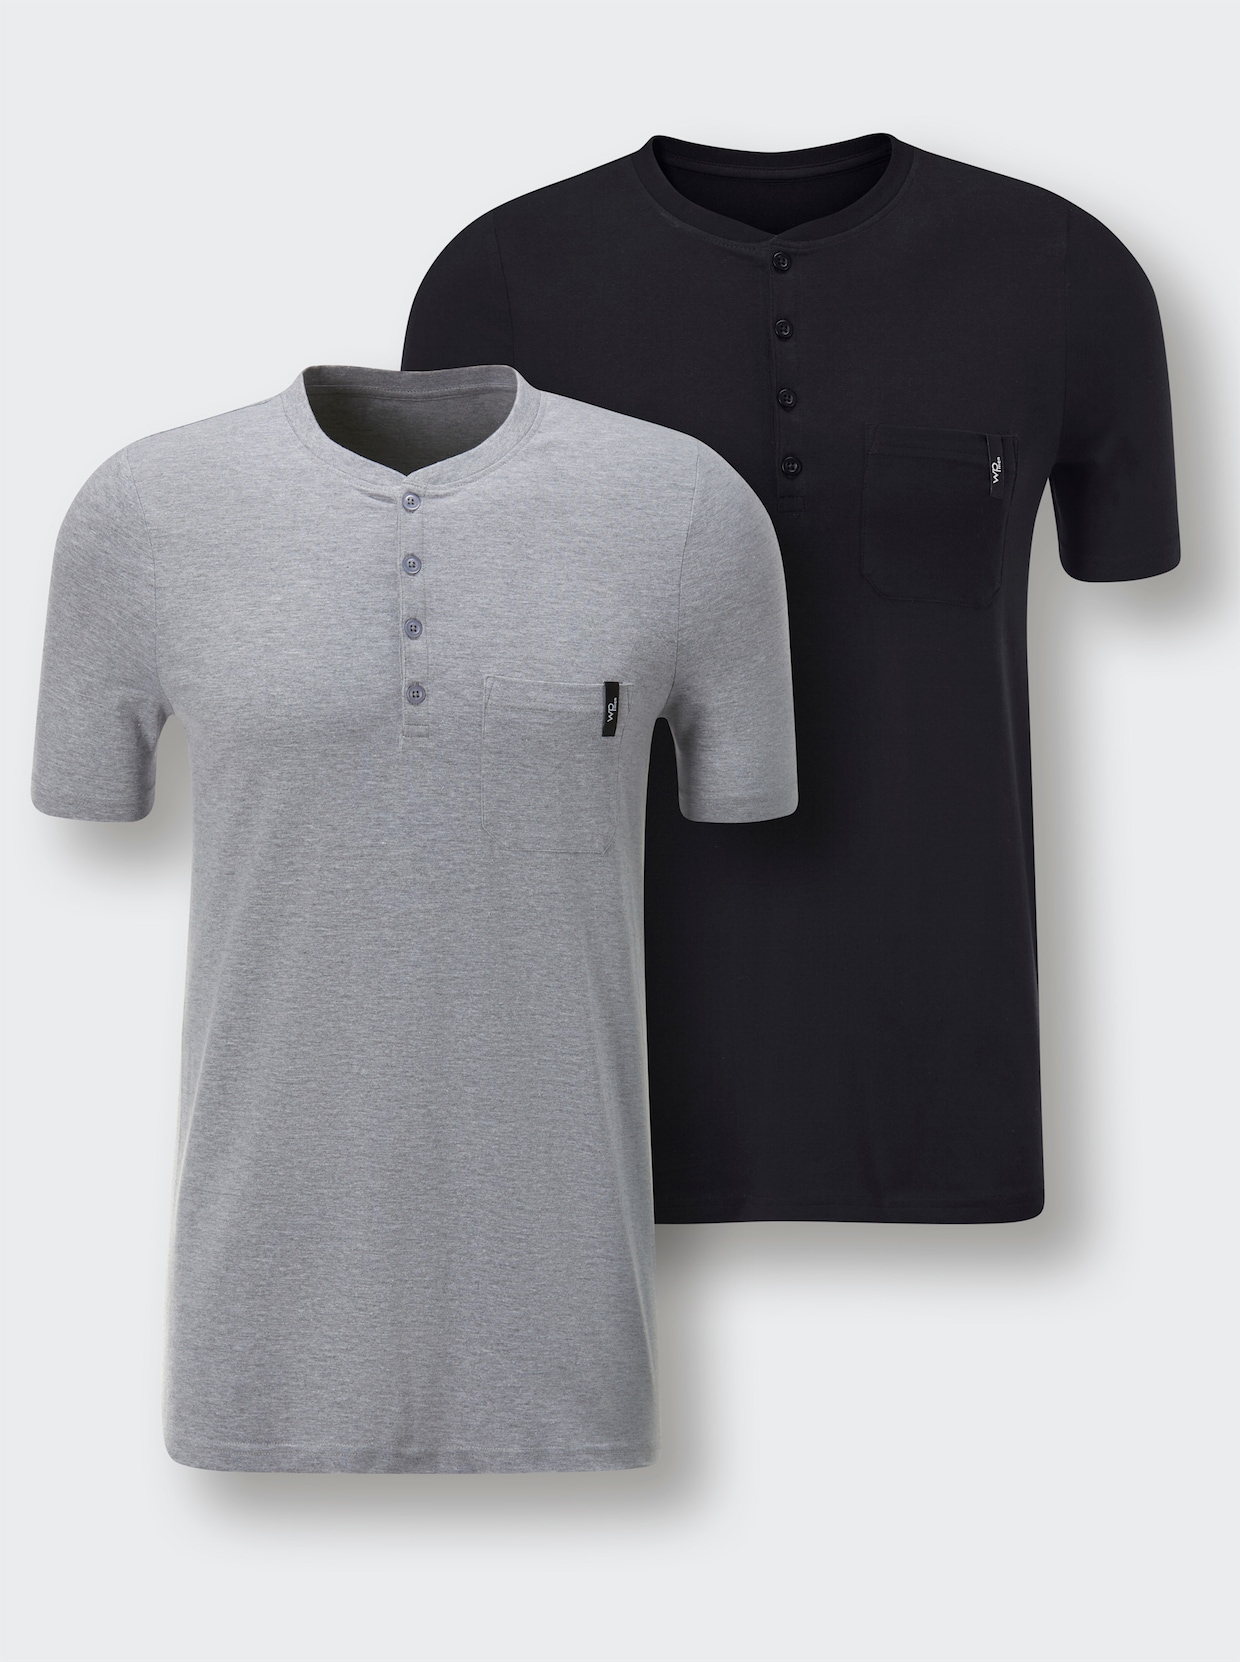 wäschepur men Shirt - schwarz + grau-meliert